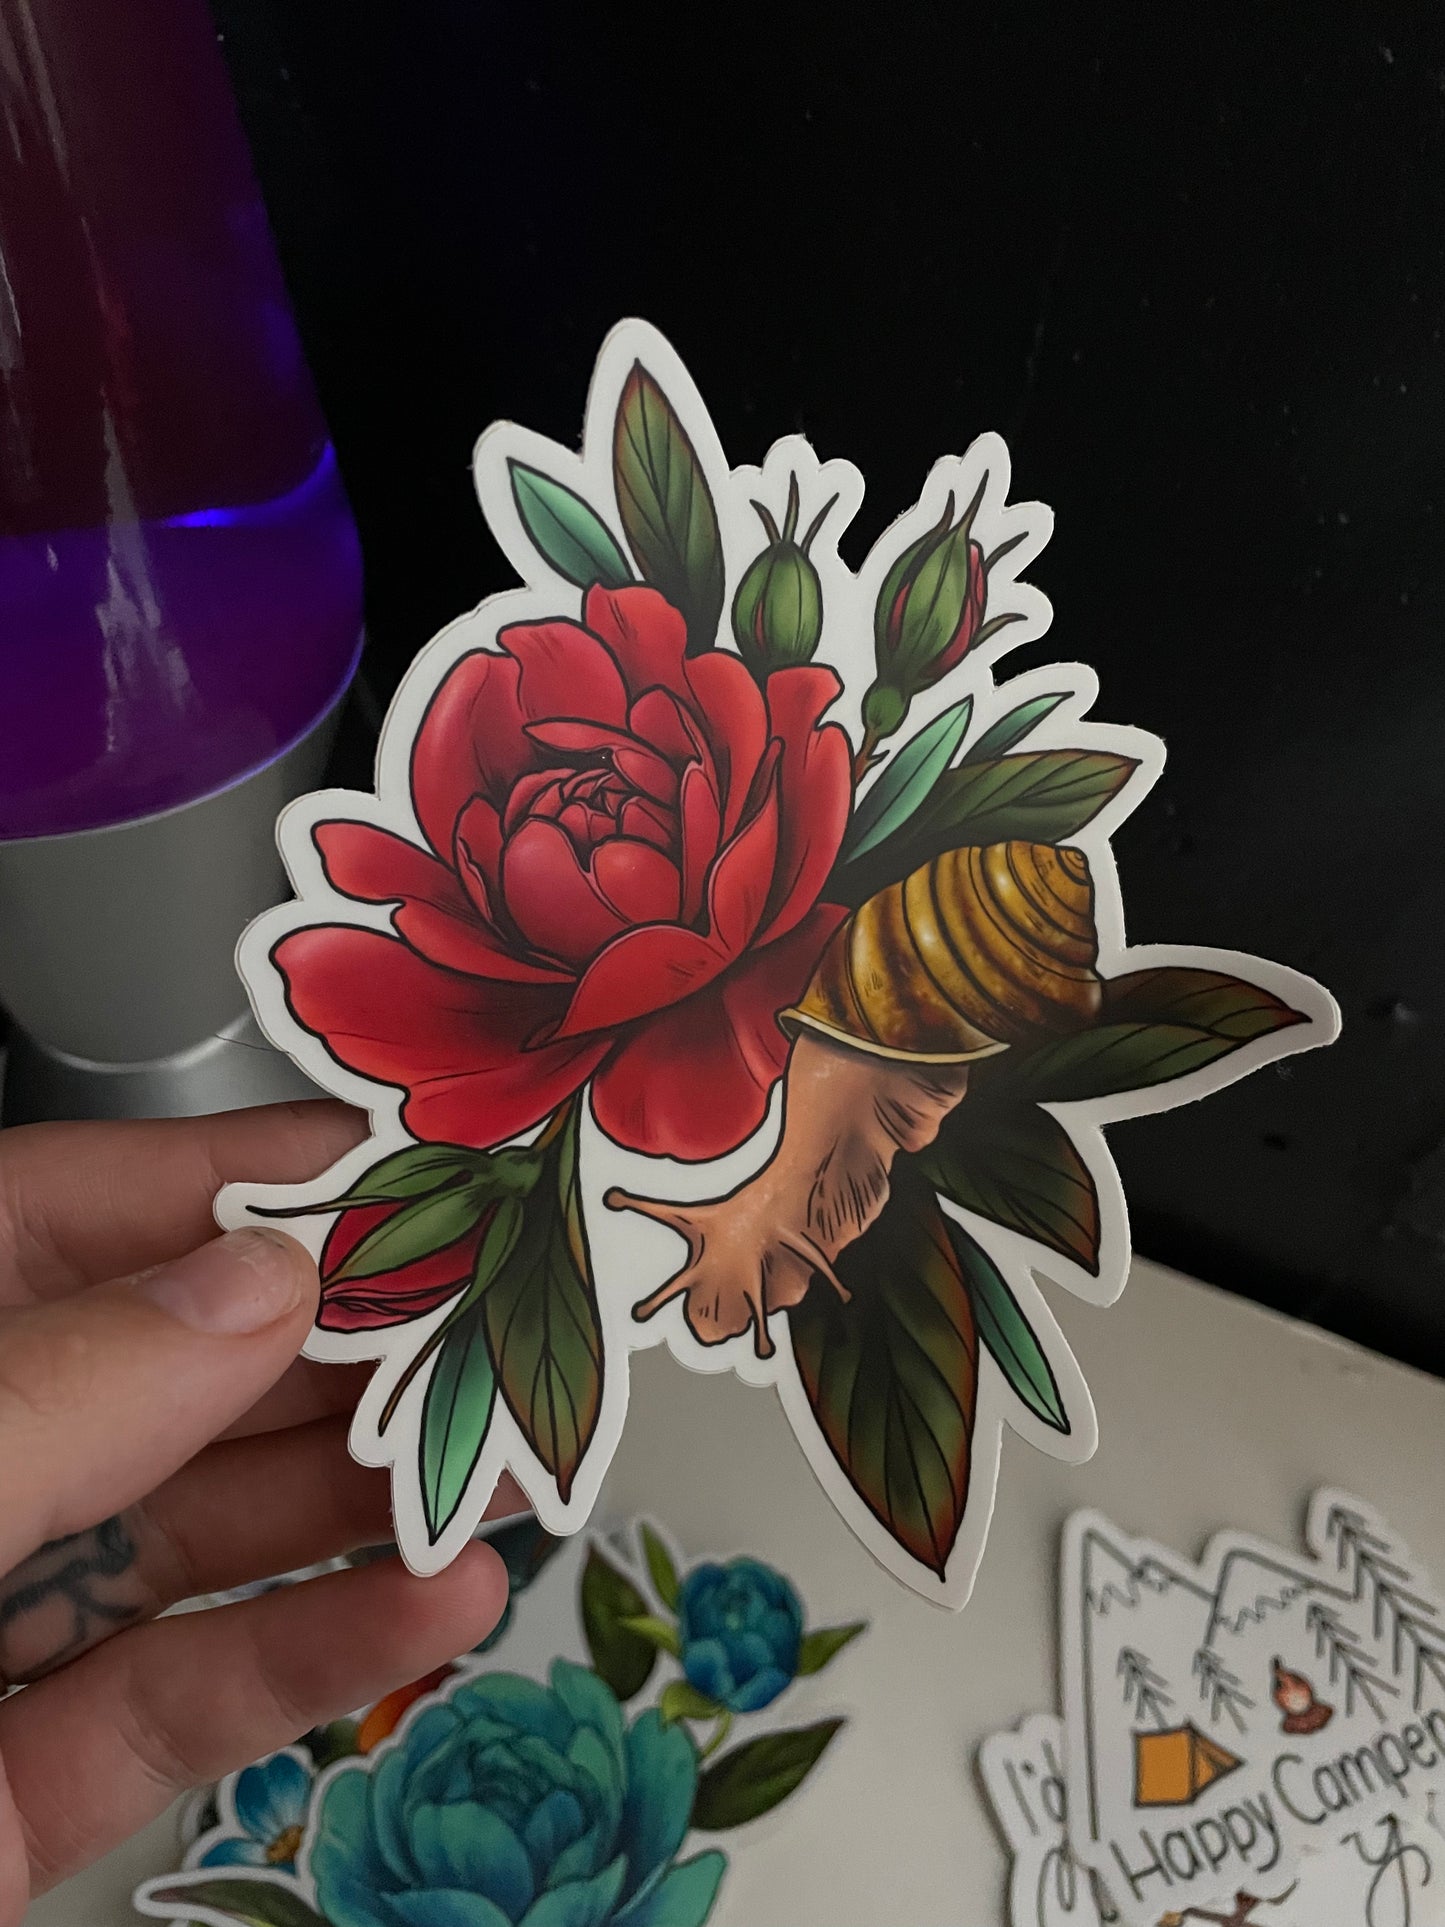 Snail on a Rose Sticker